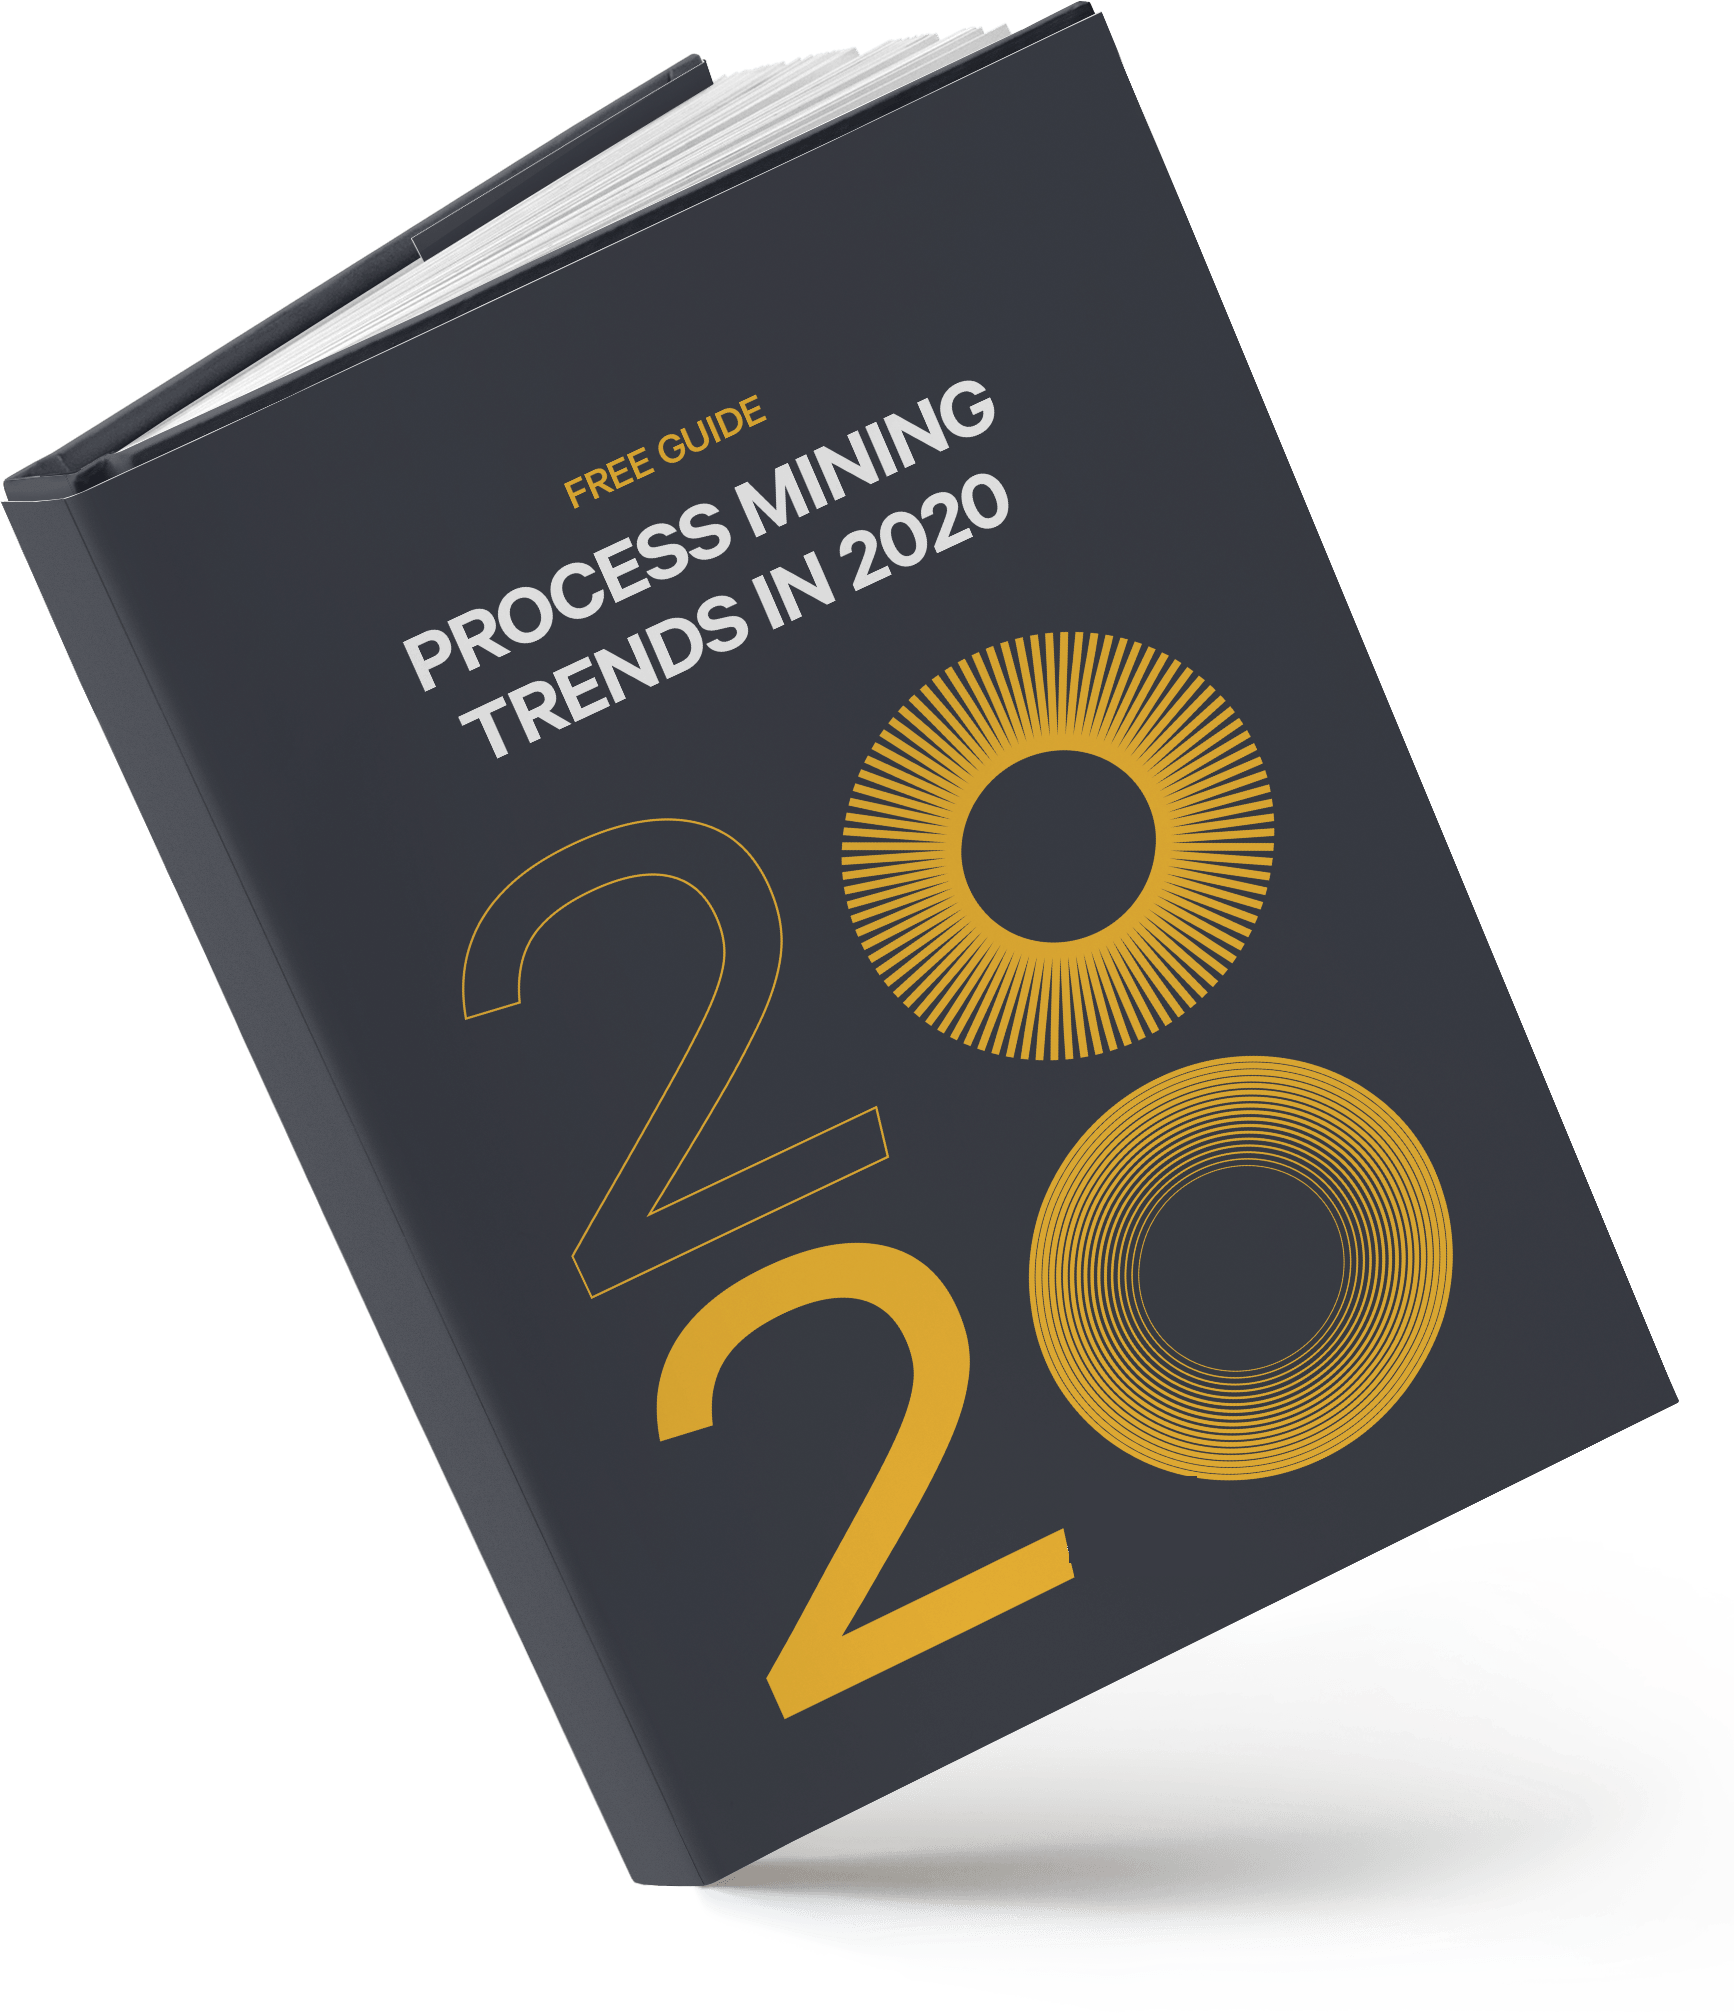 minit-process-mining-trends-in-2020@3x